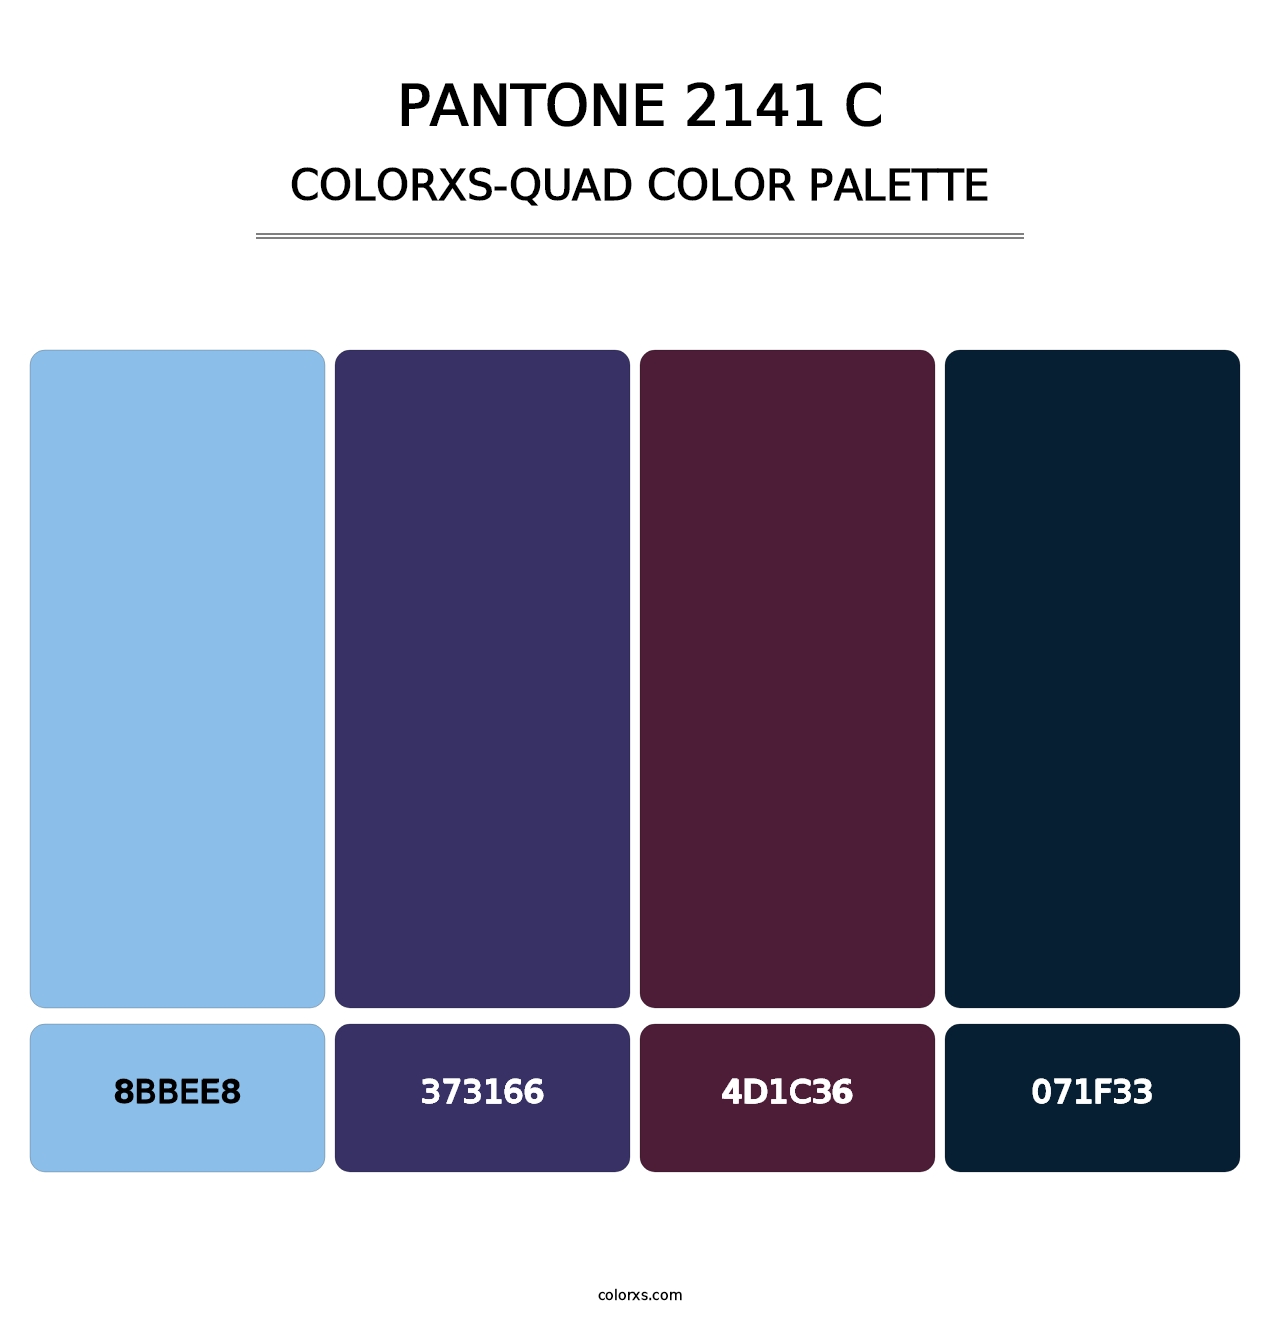 PANTONE 2141 C - Colorxs Quad Palette